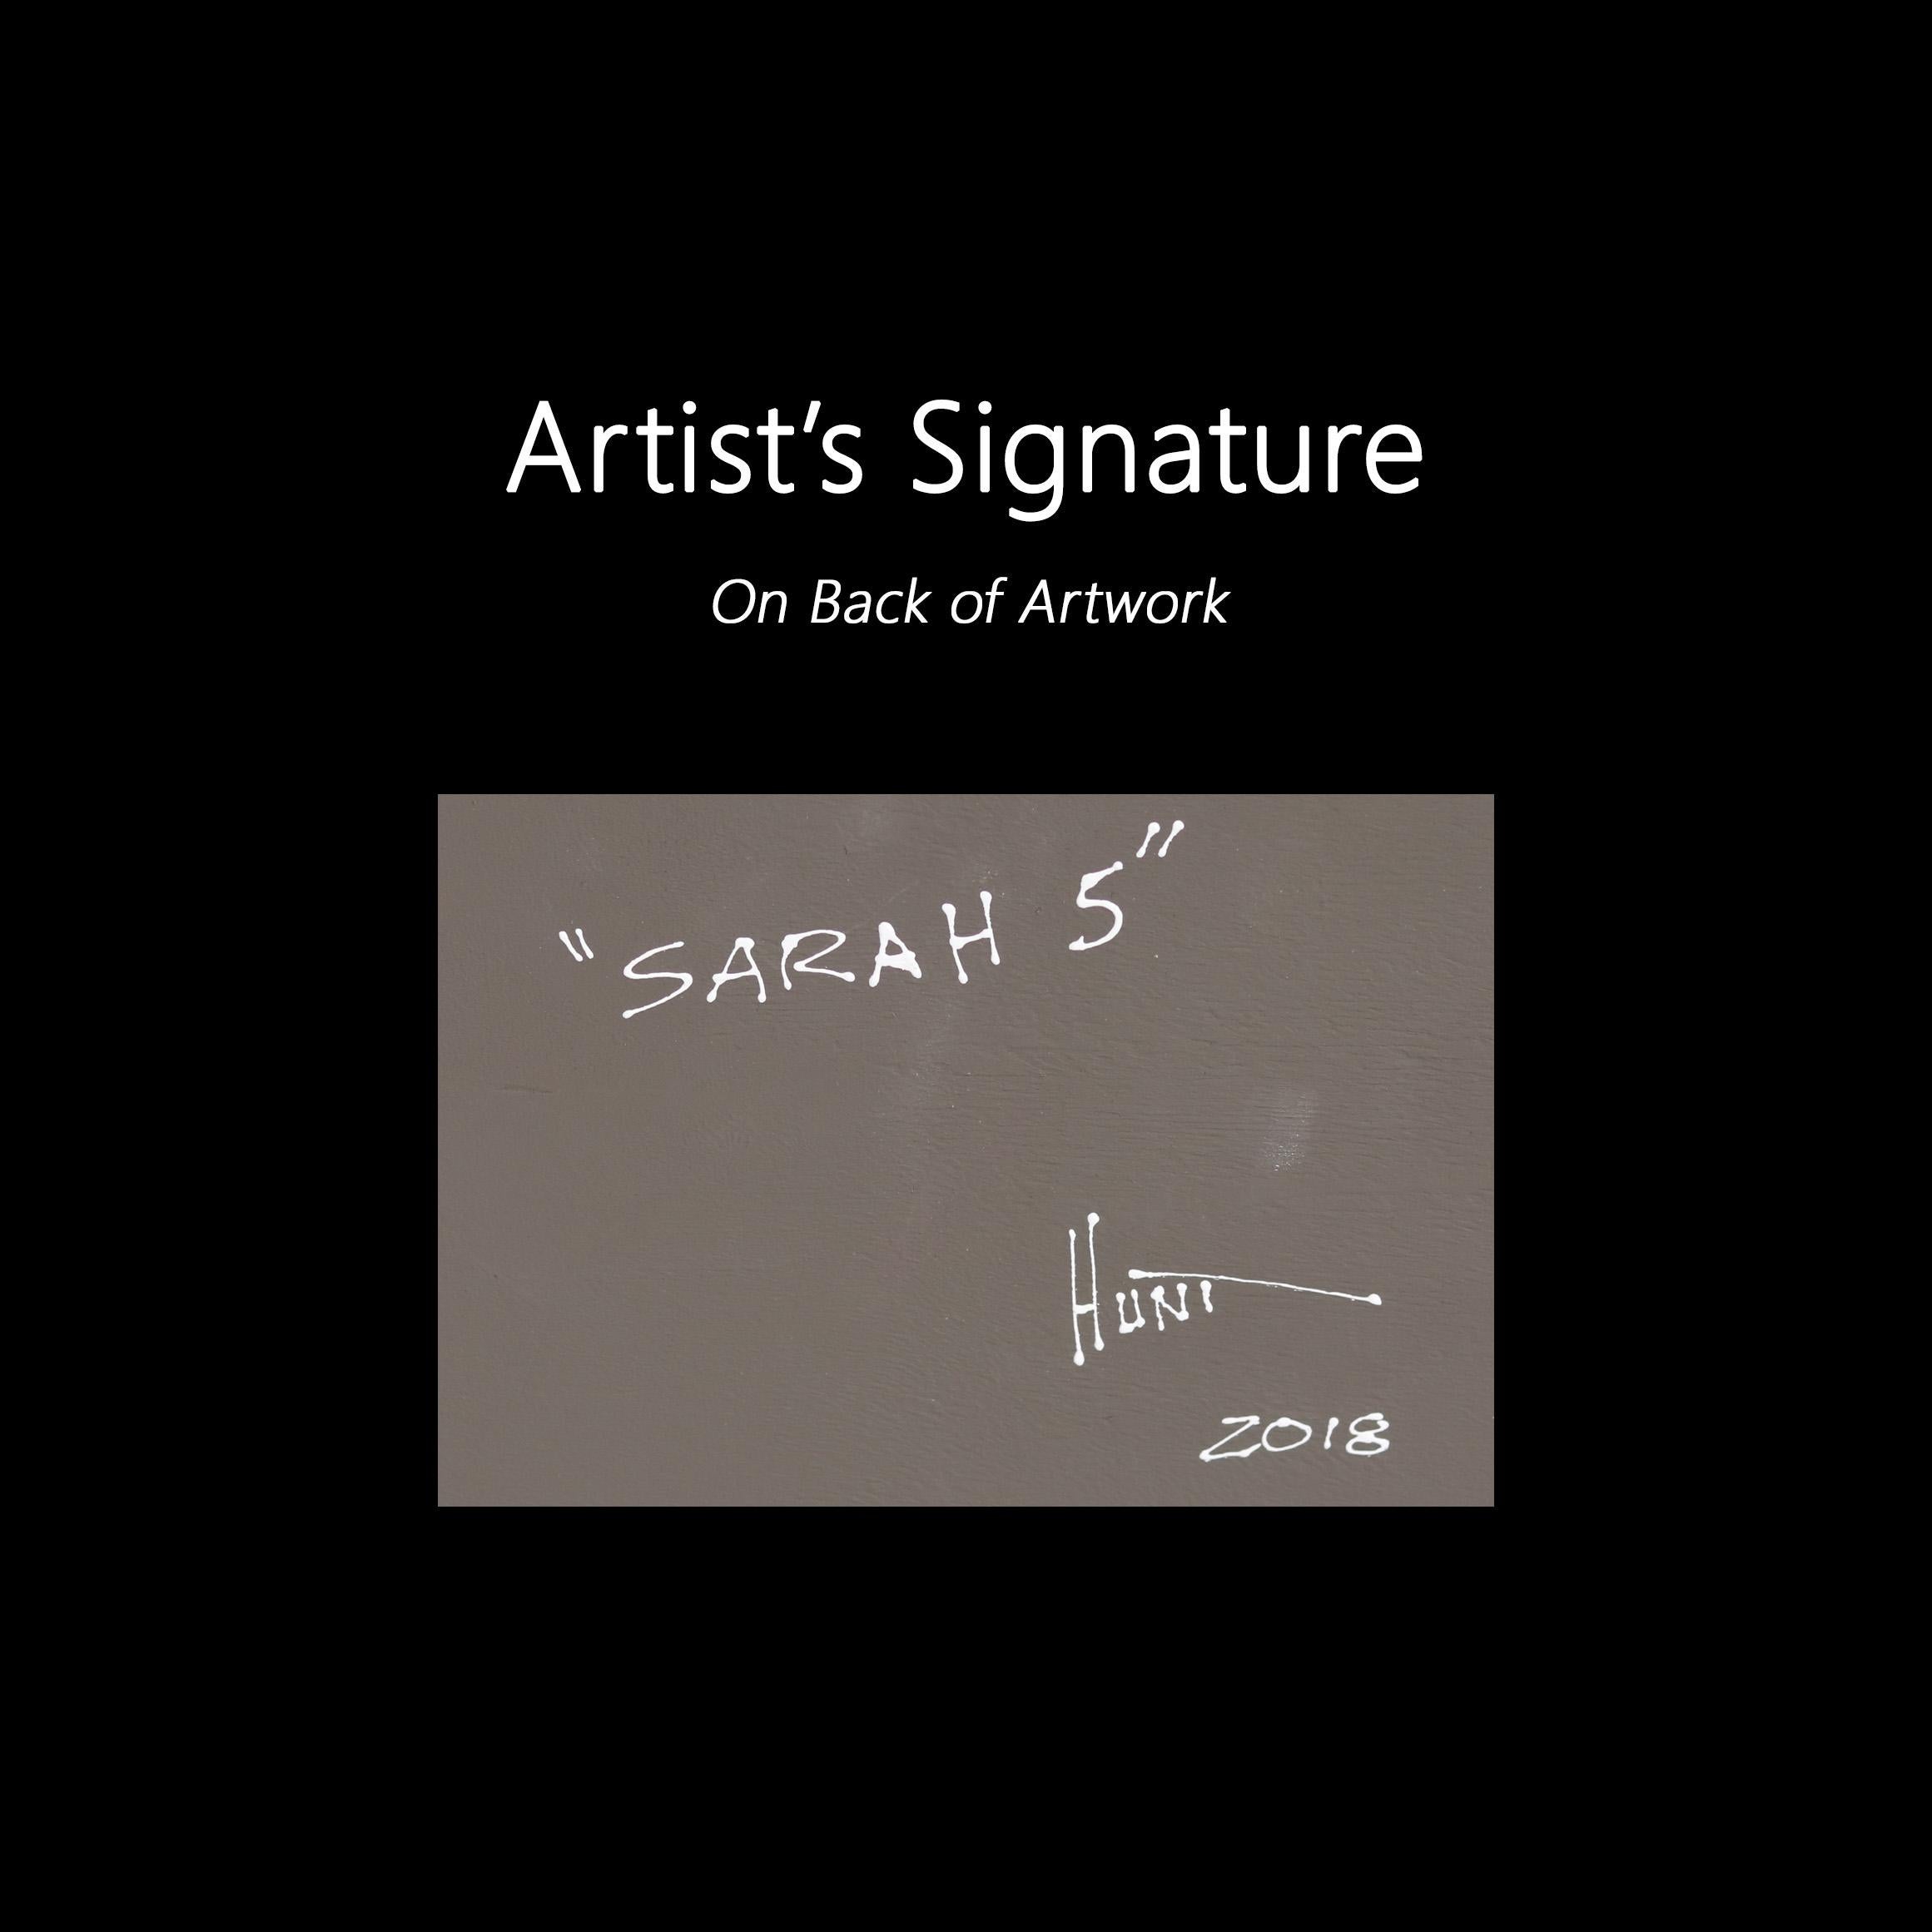 Sarah 5 - Nail and Thread Original Mixed Media String Artwork 1